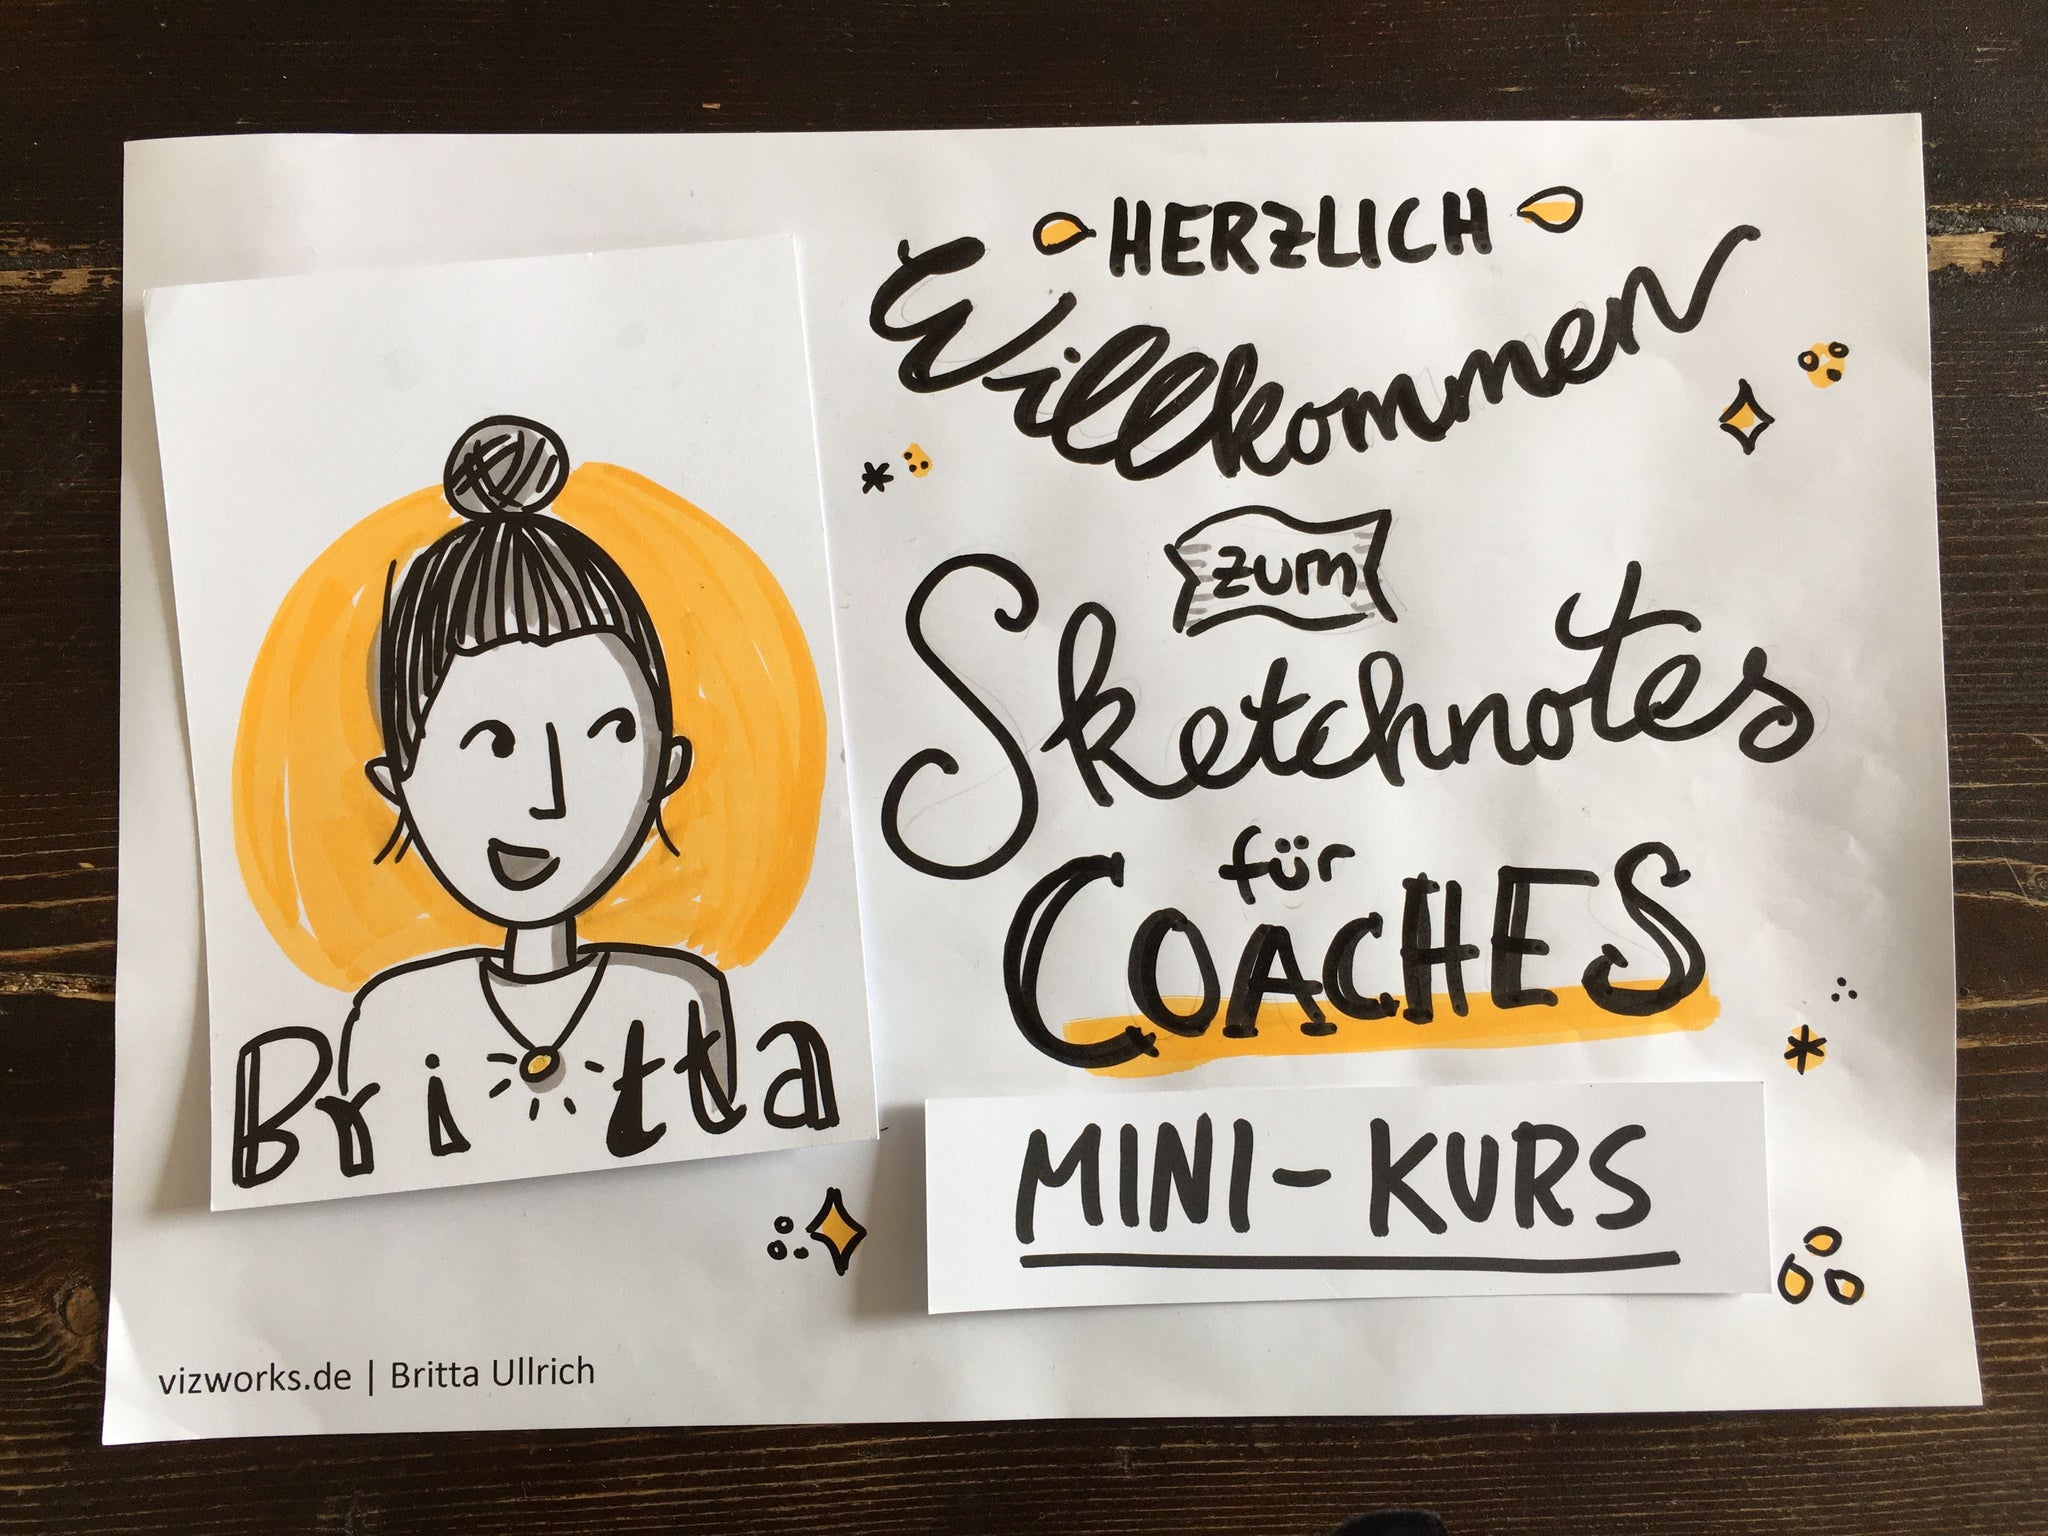 Britta's Gratis Mini-Online-Kurs "Sketchnotes für Coaches"